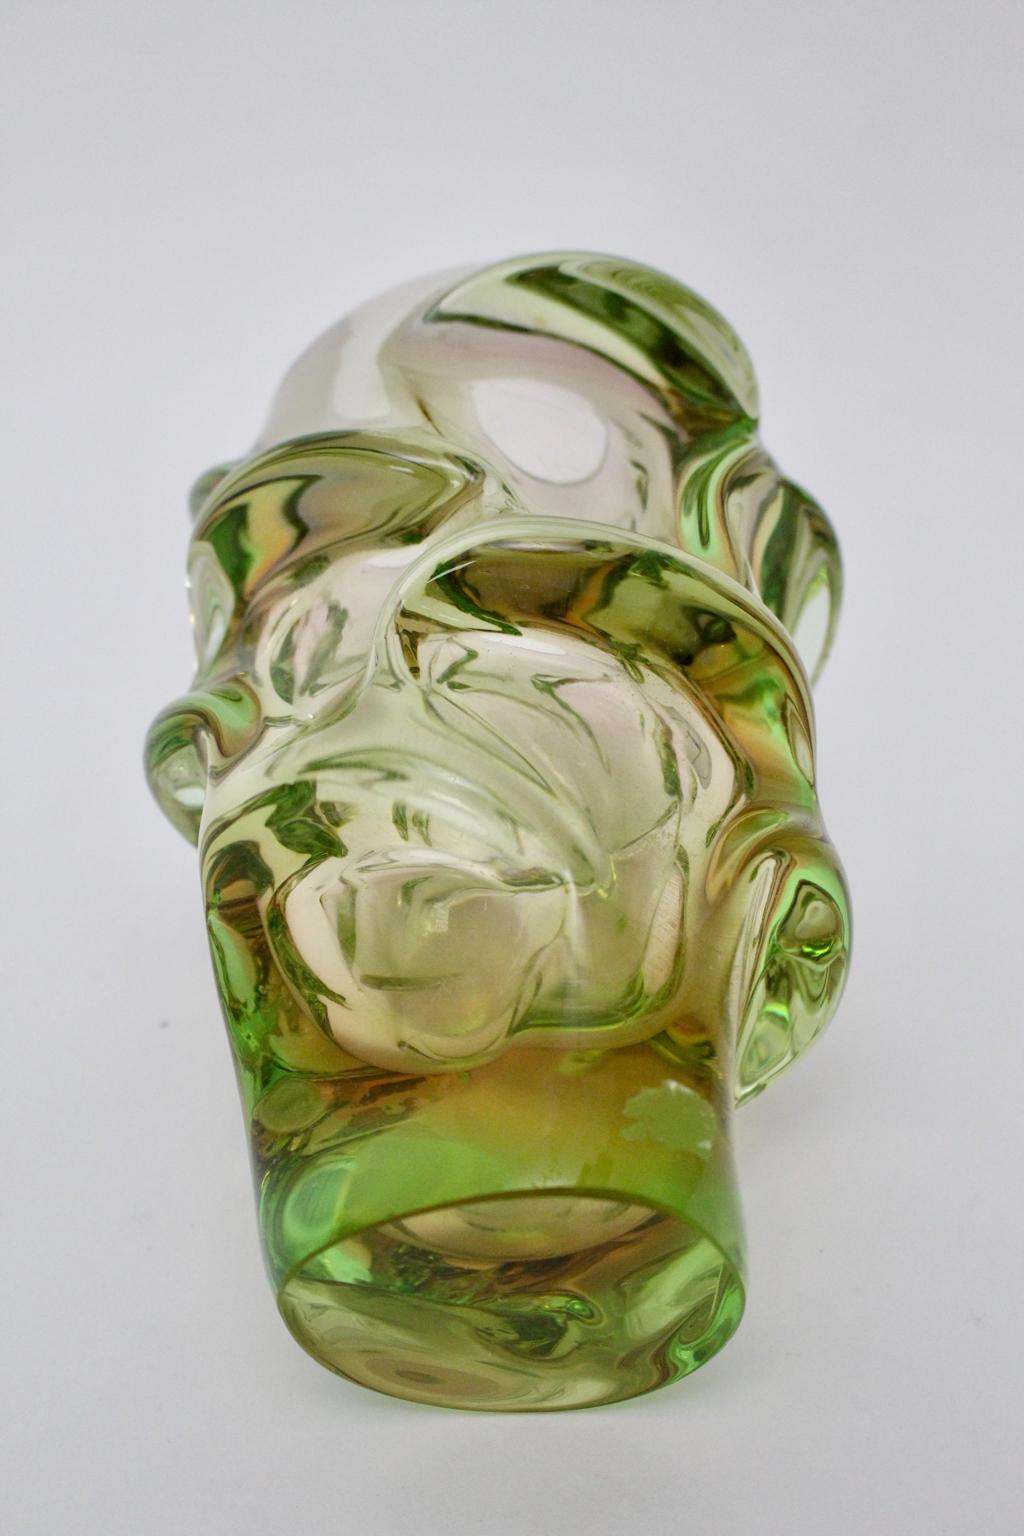 skrdlovice glass